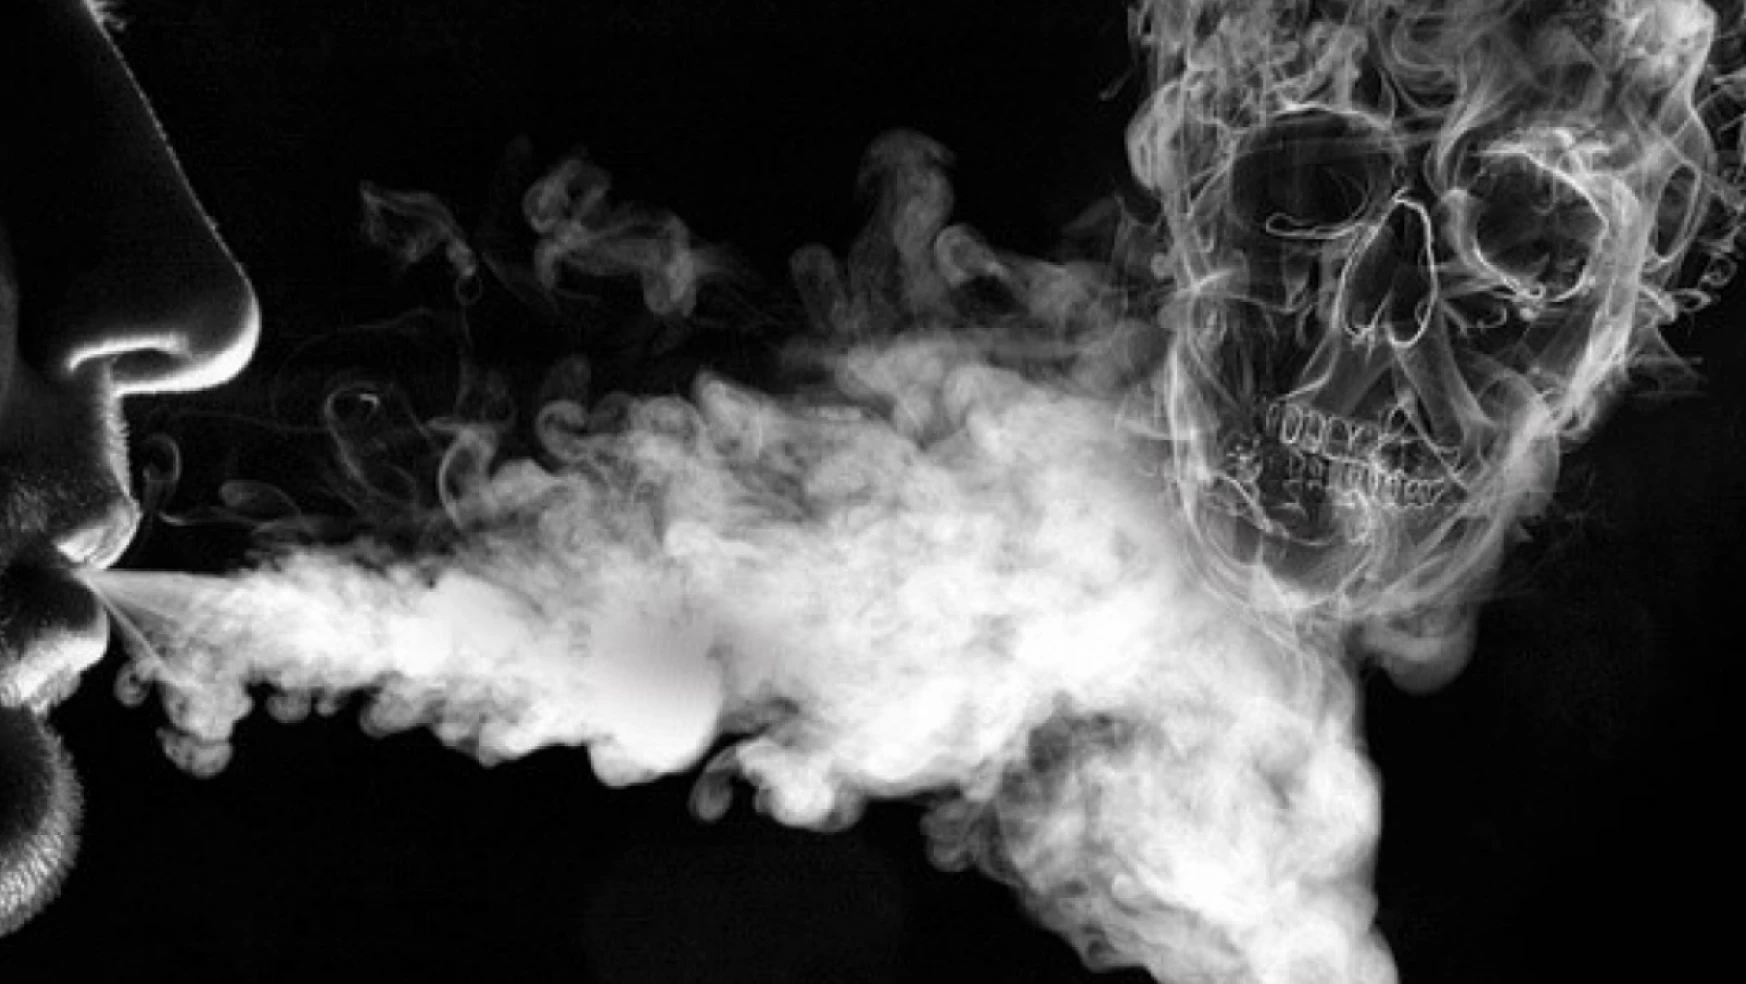 Sigara Bu Kanser Türlerini 15 Kat Artırıyor